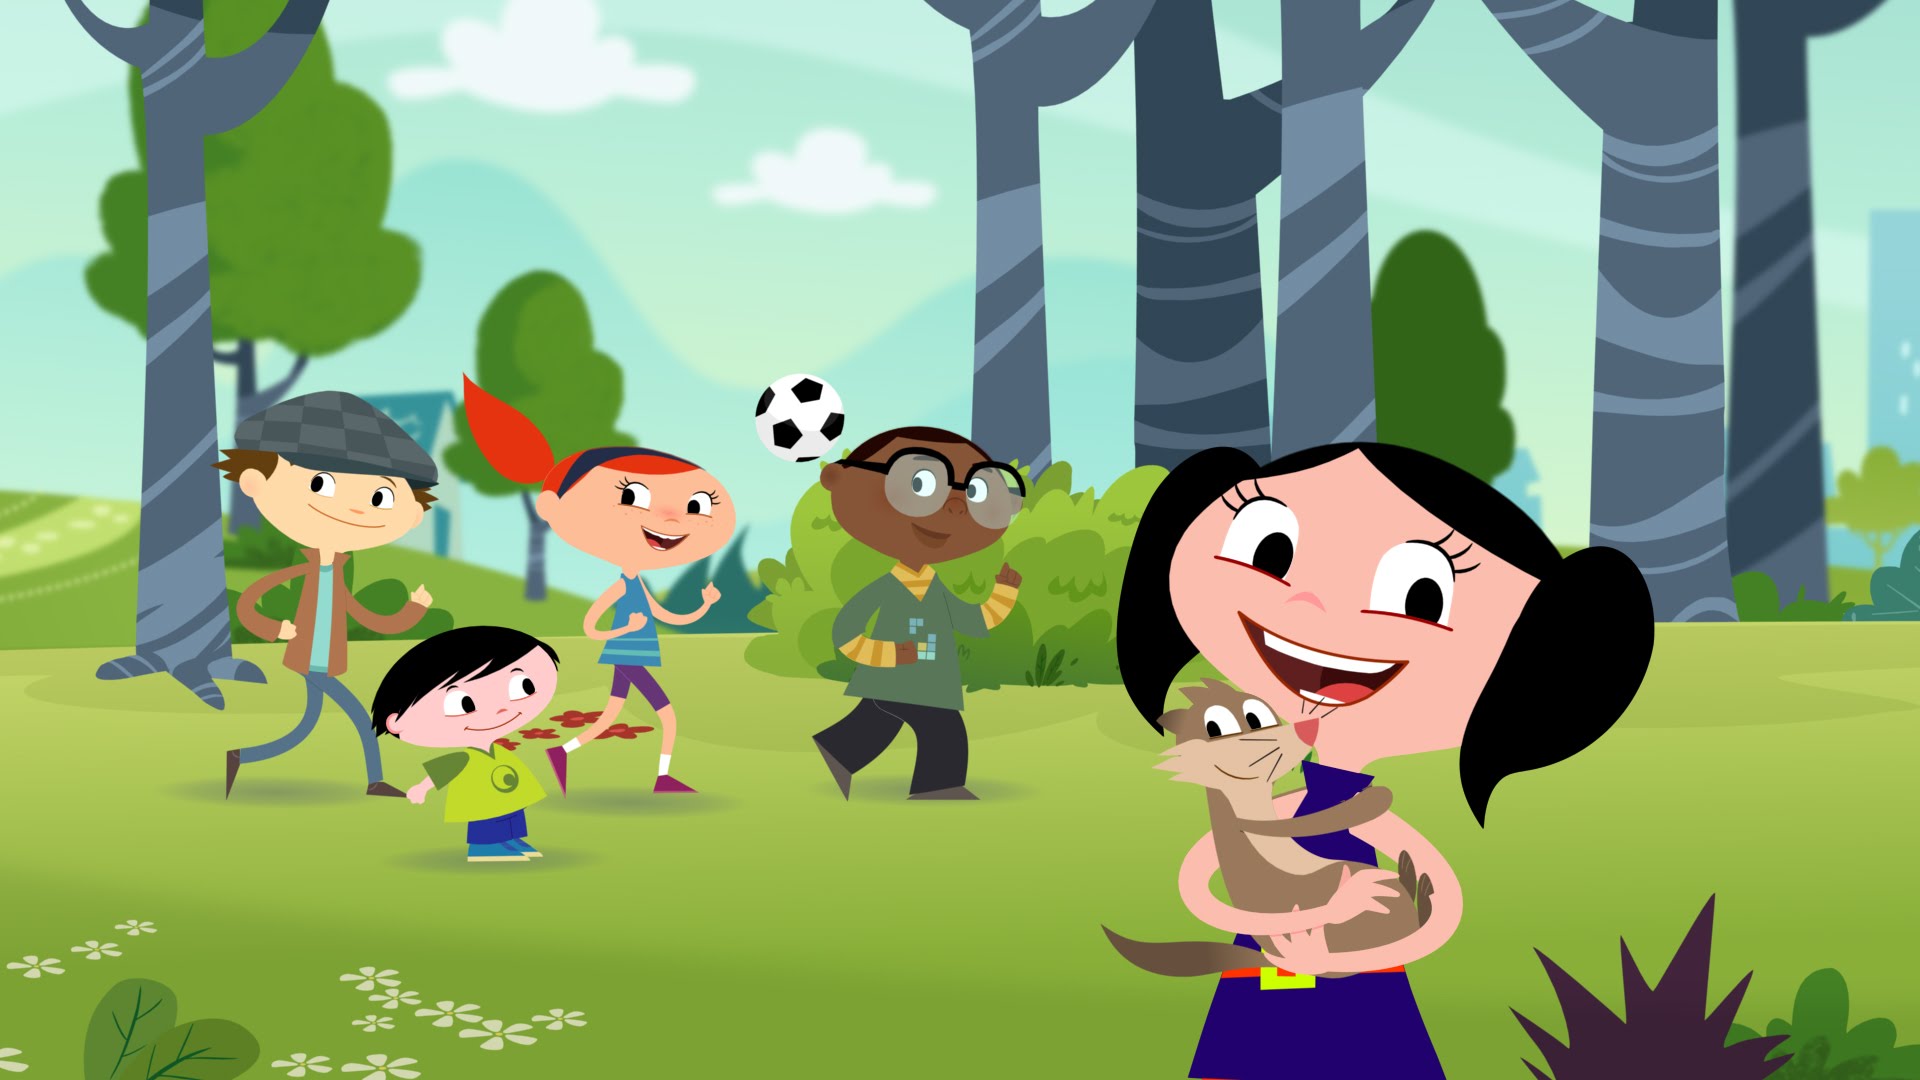 Show da Luna Personagens - conheça todas as crianças, adultos e animais que fazem parte dessa encantadora animação para crianças.